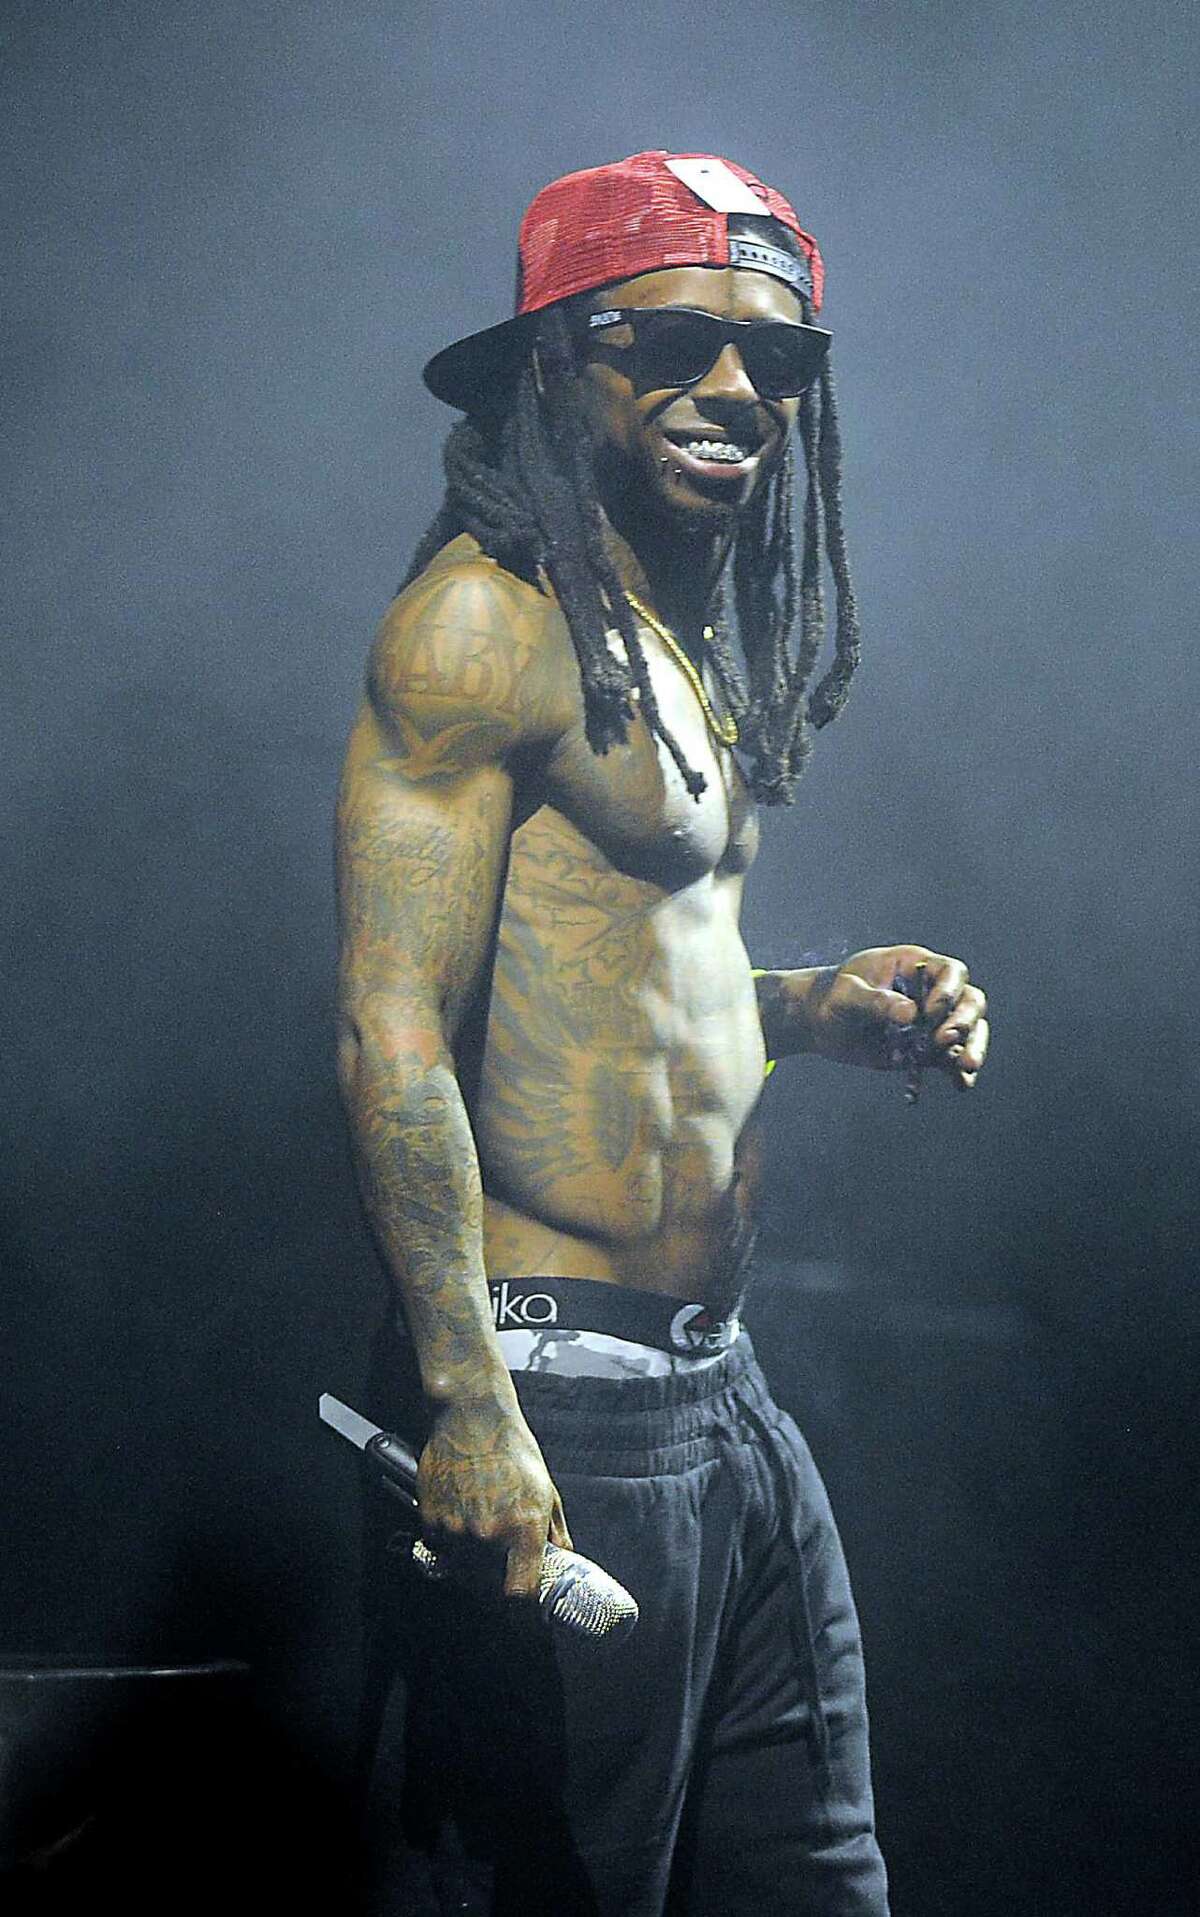 10. Lil Wayne